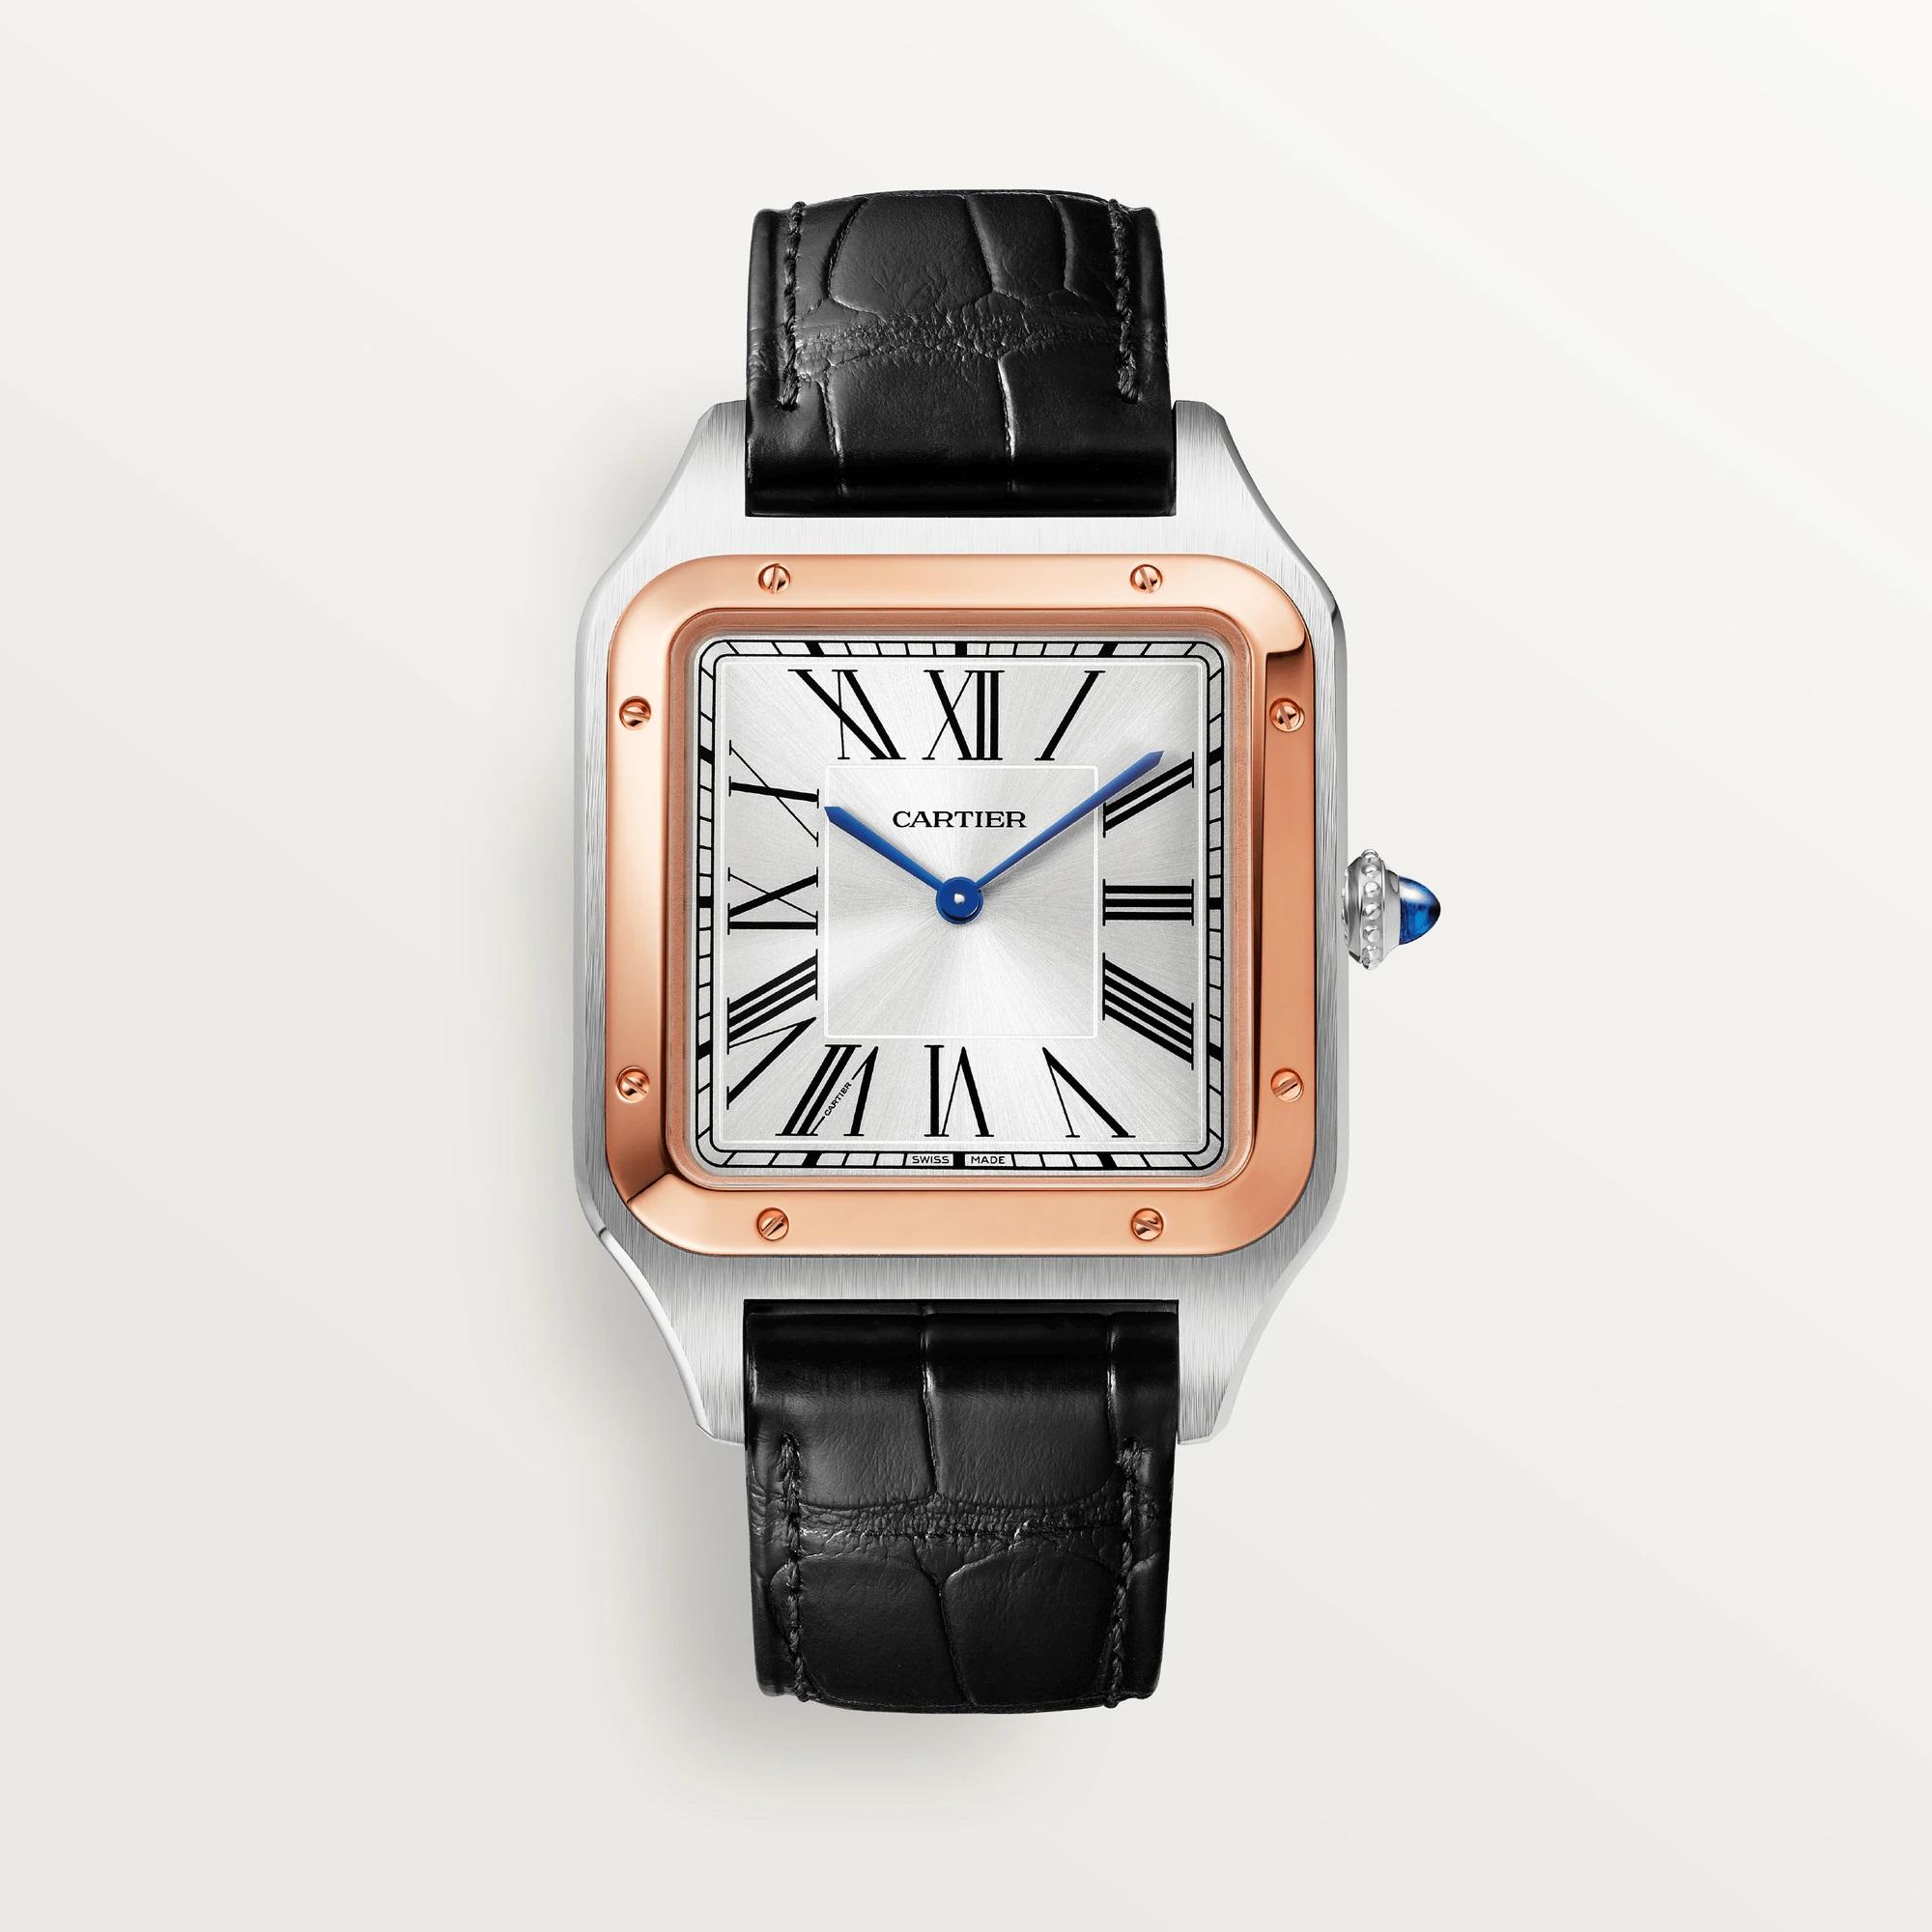 Cartier Santos-Dumont Watch in Rose Gold with Black Alligator Strap
